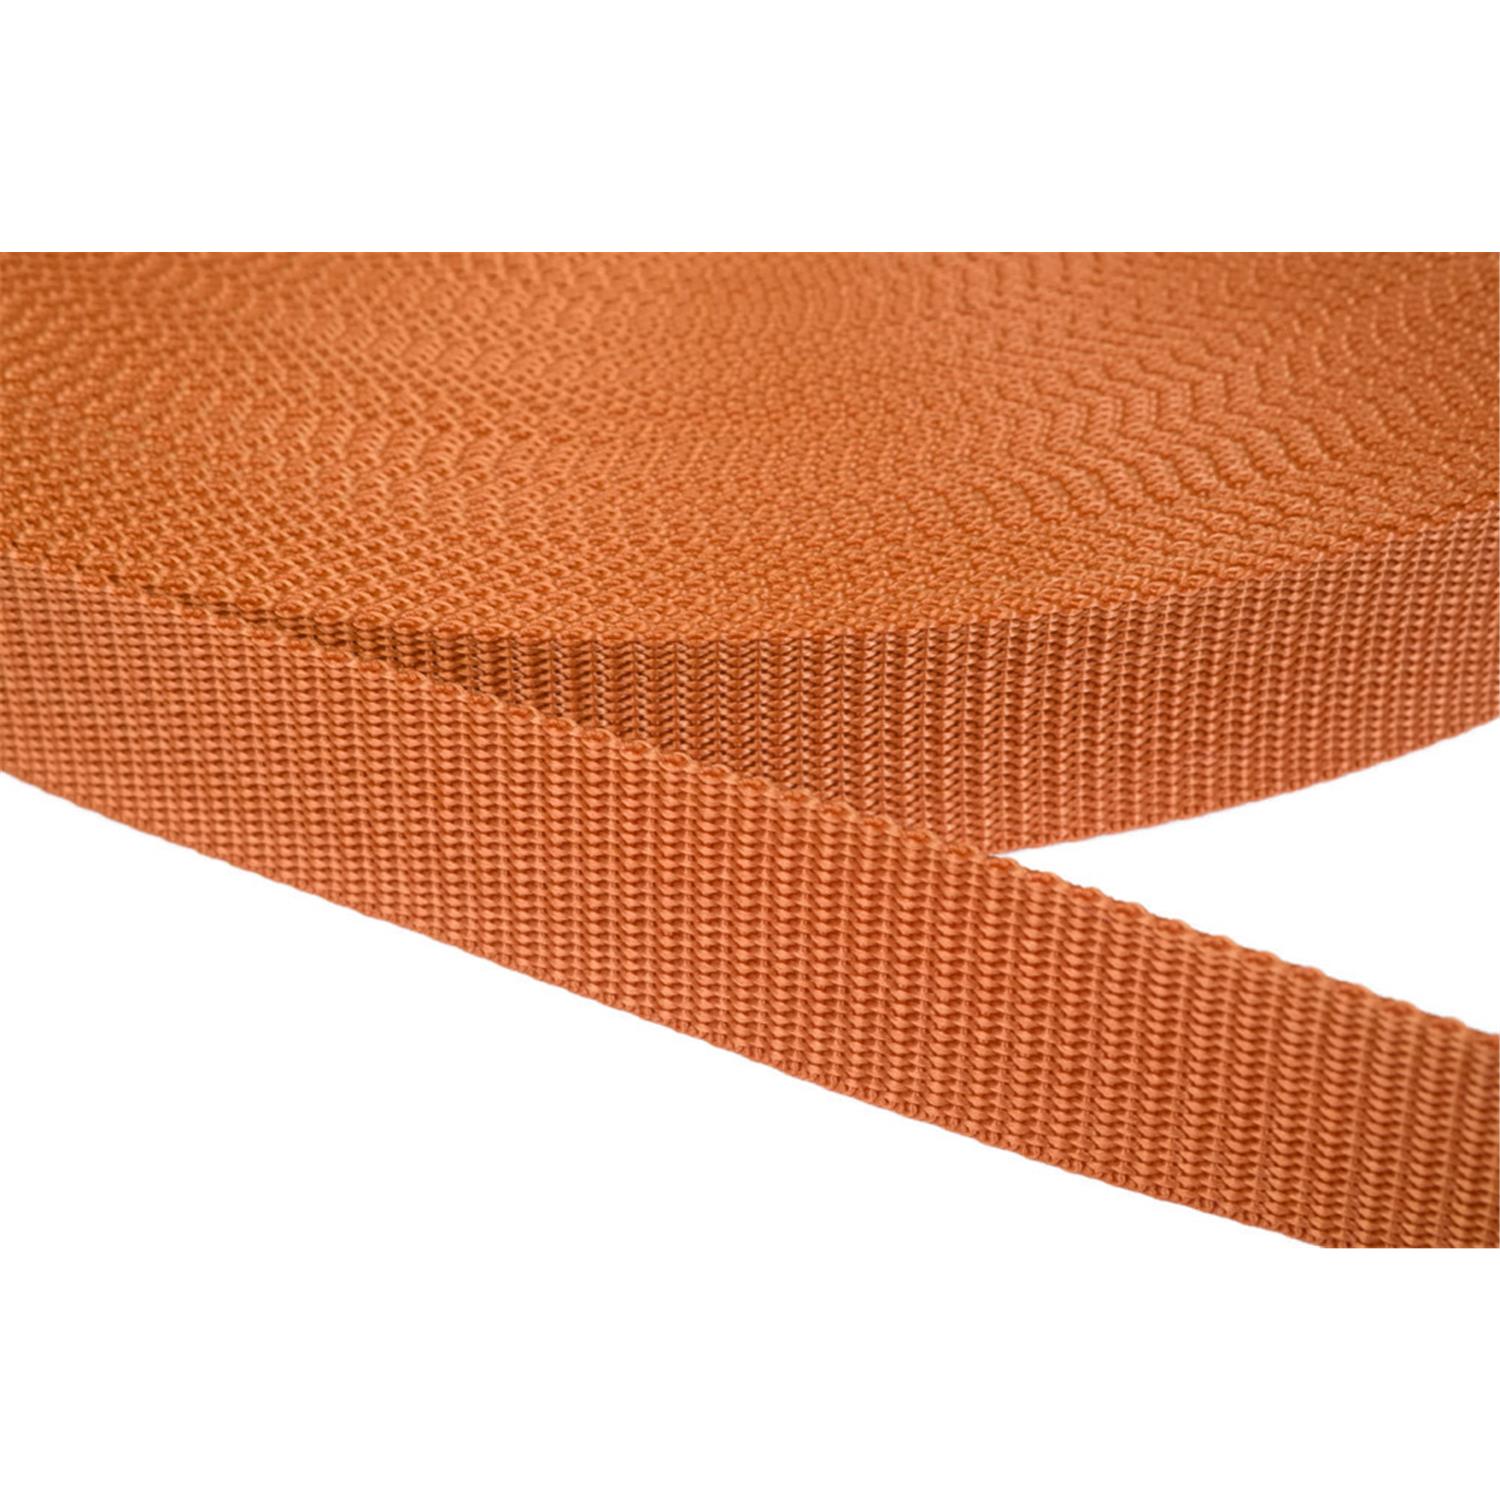 Gurtband 25mm breit aus Polypropylen in 41 Farben 05 - ockerbraun 6 Meter